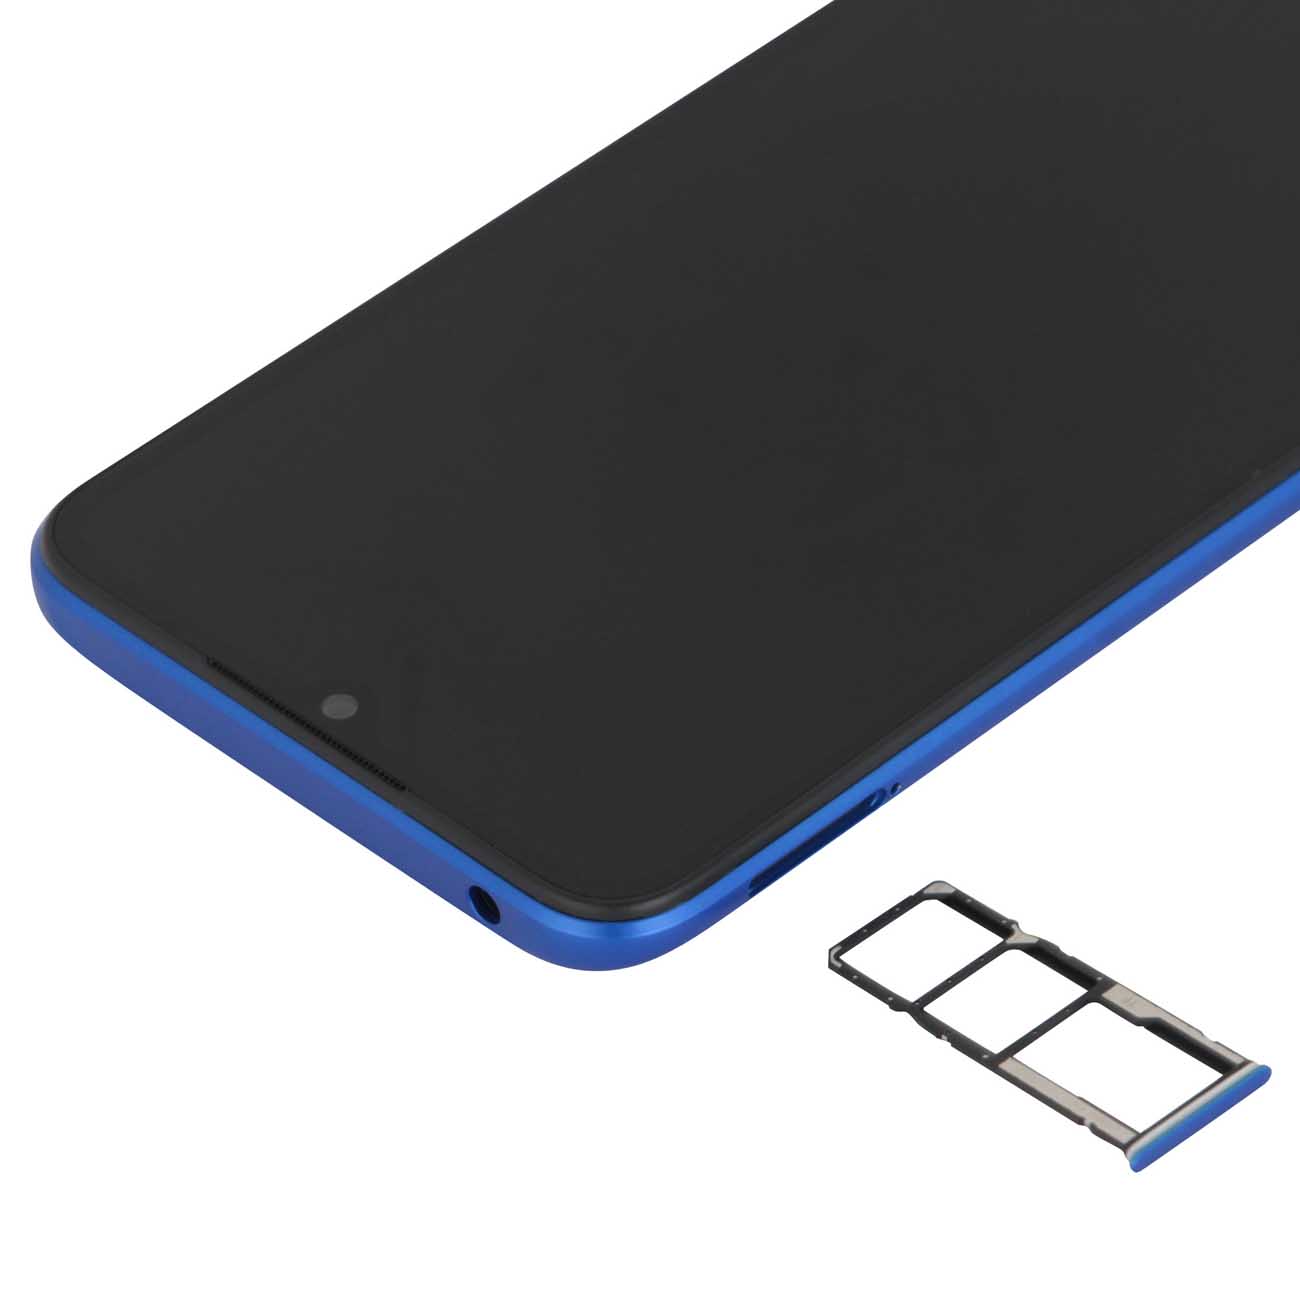 Купить смартфон xiaomi redmi 9c nfc 3+64gb twilight blue Смартфоны в официальном магазине Apple, Samsung, Xiaomi. iPixel.ru Купить, заказ, кредит, рассрочка, отзывы,  характеристики, цена,  фотографии, в подарок.